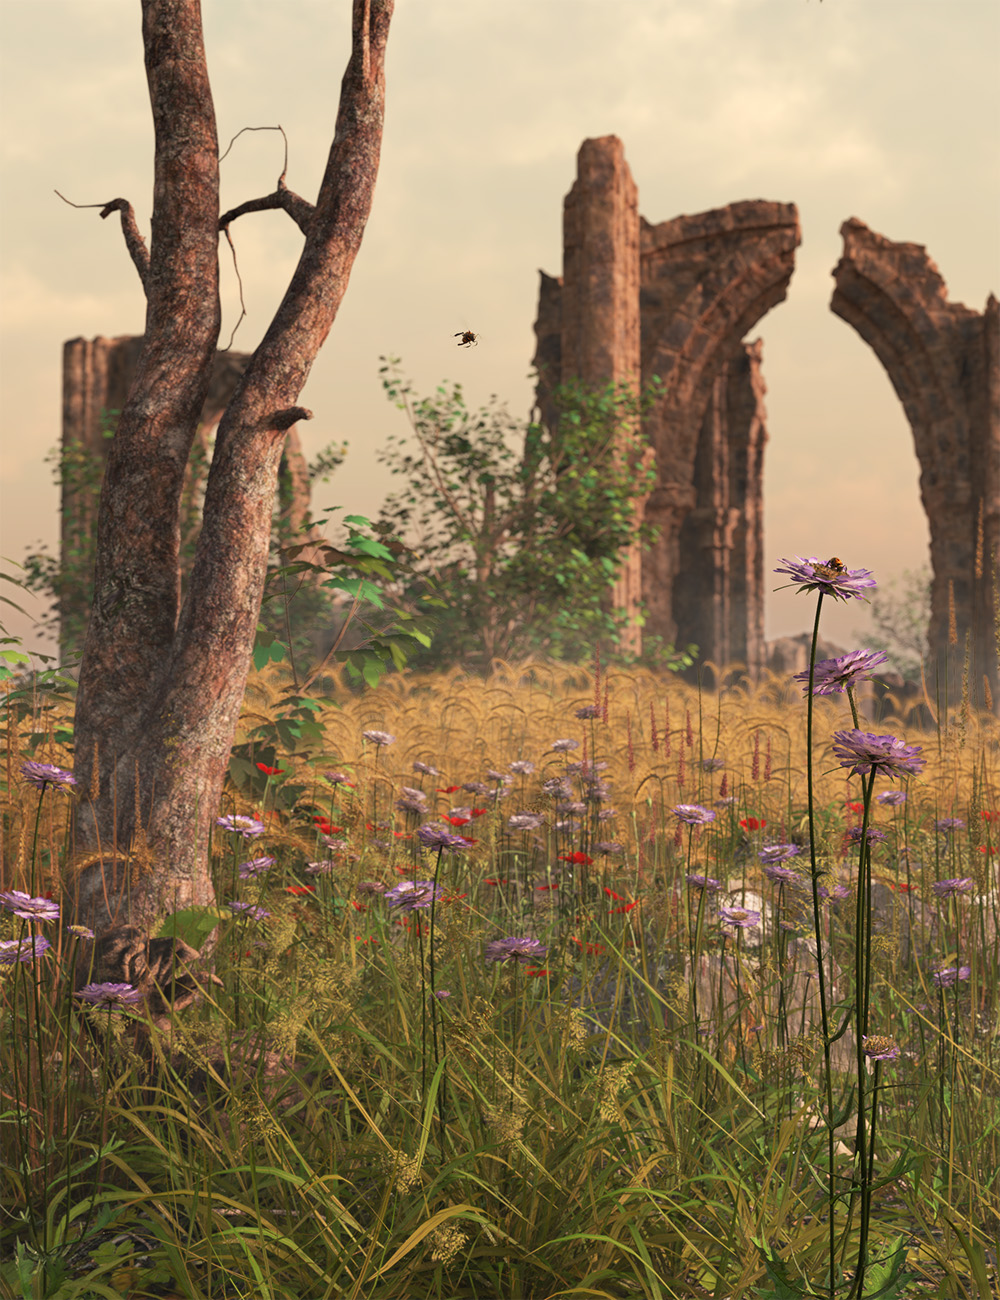 Meadow Flowers - Field Scabious by: MartinJFrost, 3D Models by Daz 3D